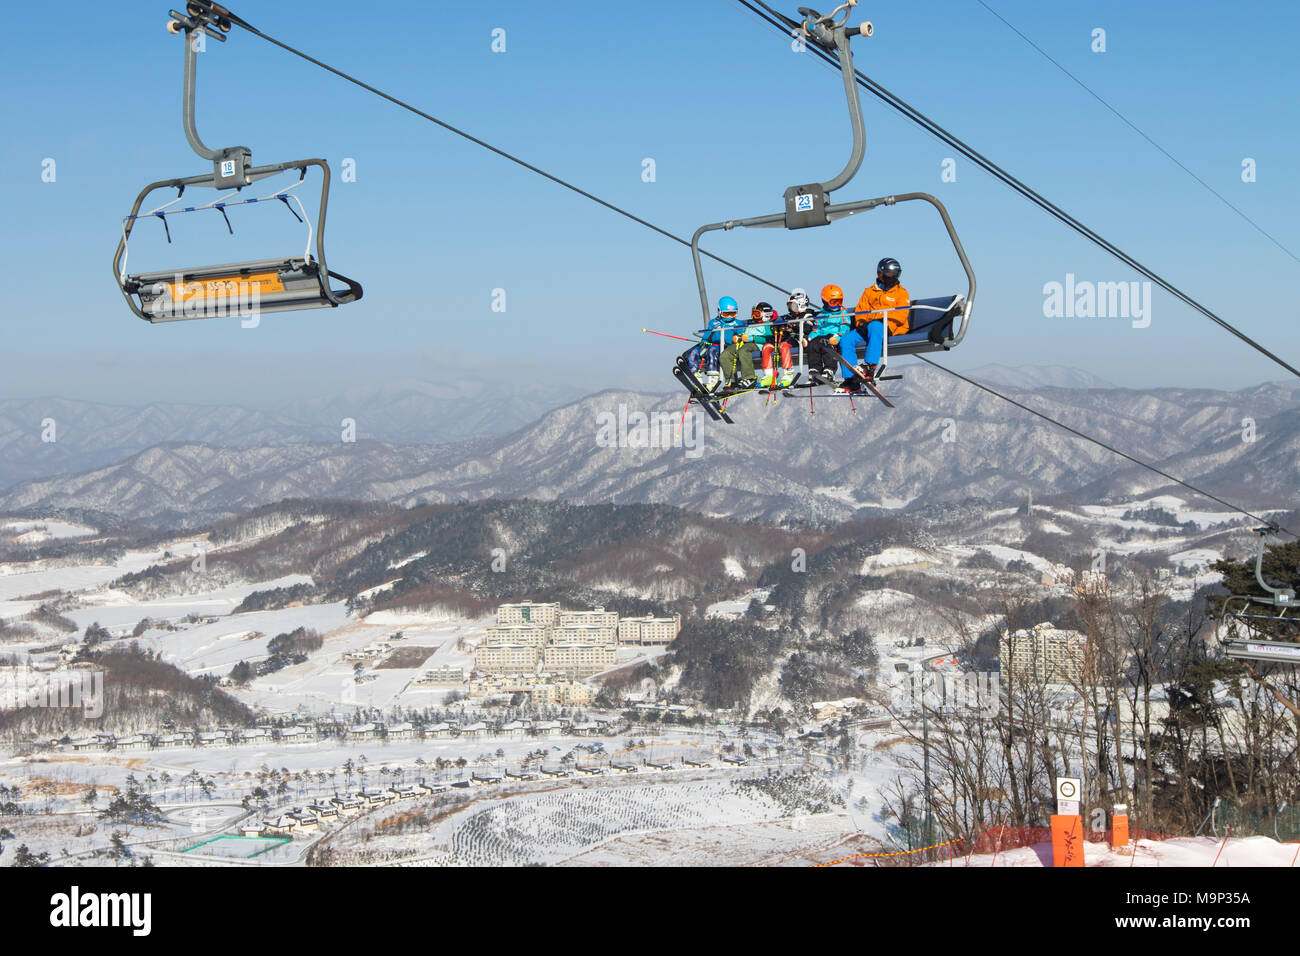 Bunt gekleideter Skifahrer in einem Sessellift hoch über Alpensia Resort in der Region Gangwon-do in Südkorea. Die alpensia Resort ist ein Skigebiet und eine touristische Attraktion. Es ist auf dem Gebiet der Gemeinde von daegwallyeong-myeon befindet sich in der Grafschaft von Pyeongchang, die Olympischen Winterspiele hosting im Februar 2018. Das Skigebiet ist ca. 2,5 Stunden von Seoul oder Incheon Airport mit dem Auto, überwiegend alle Autobahn. Alpensia hat sechs Pisten für Ski und Snowboard, mit bis zu 1,4 km (0.87 mi) lang, für Anfänger und Fortgeschrittene, und ein Bereich für Snowboarder vorbehalten. Stockfoto